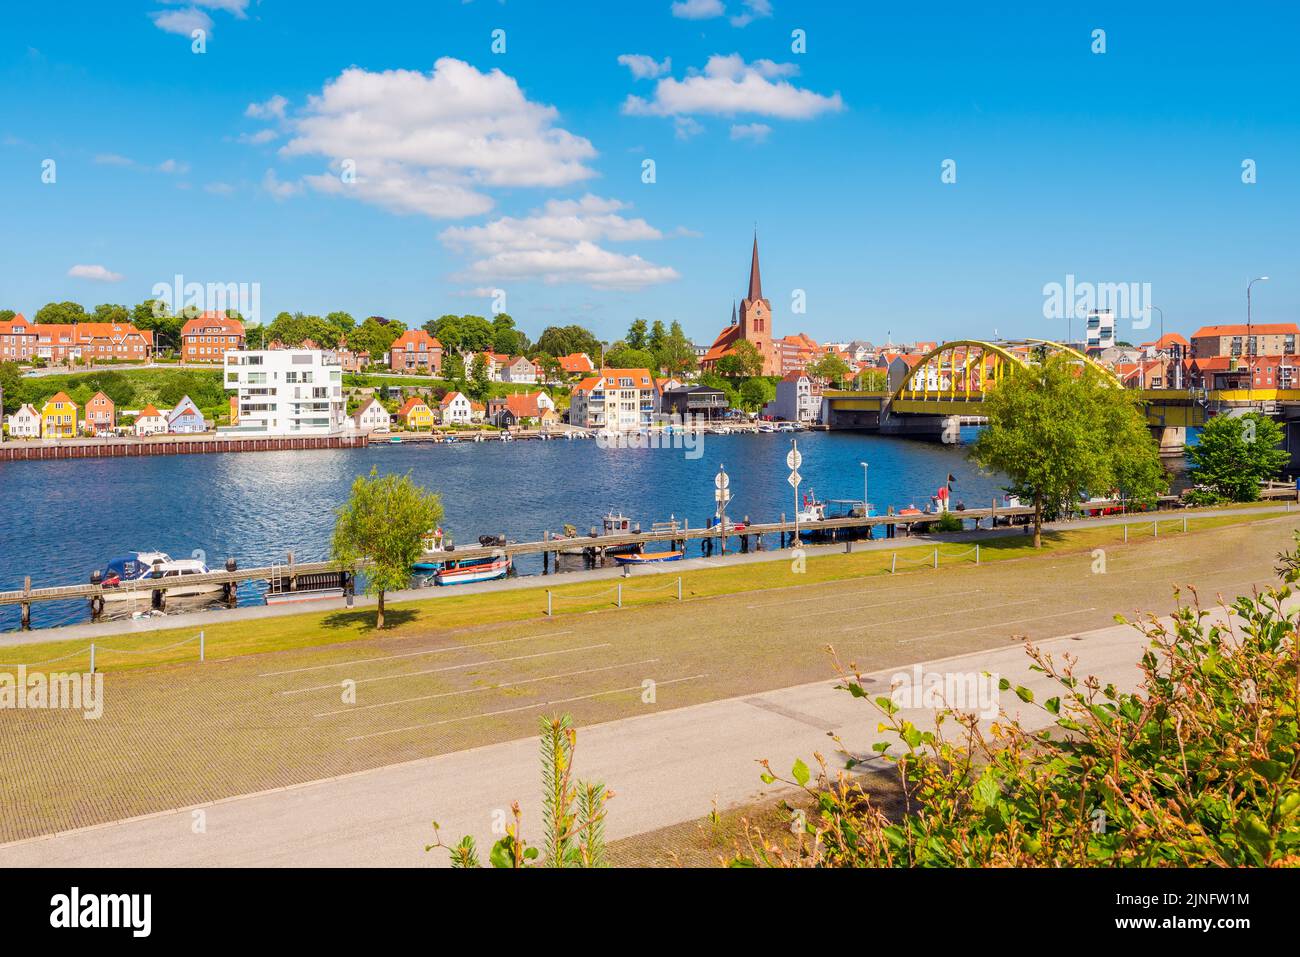 Vista de la ciudad de Sonderborg, Jutland, Dinamarca. La ciudad tiene una población de alrededor de 28.000 habitantes y es un centro de comercio, industria y educación Foto de stock